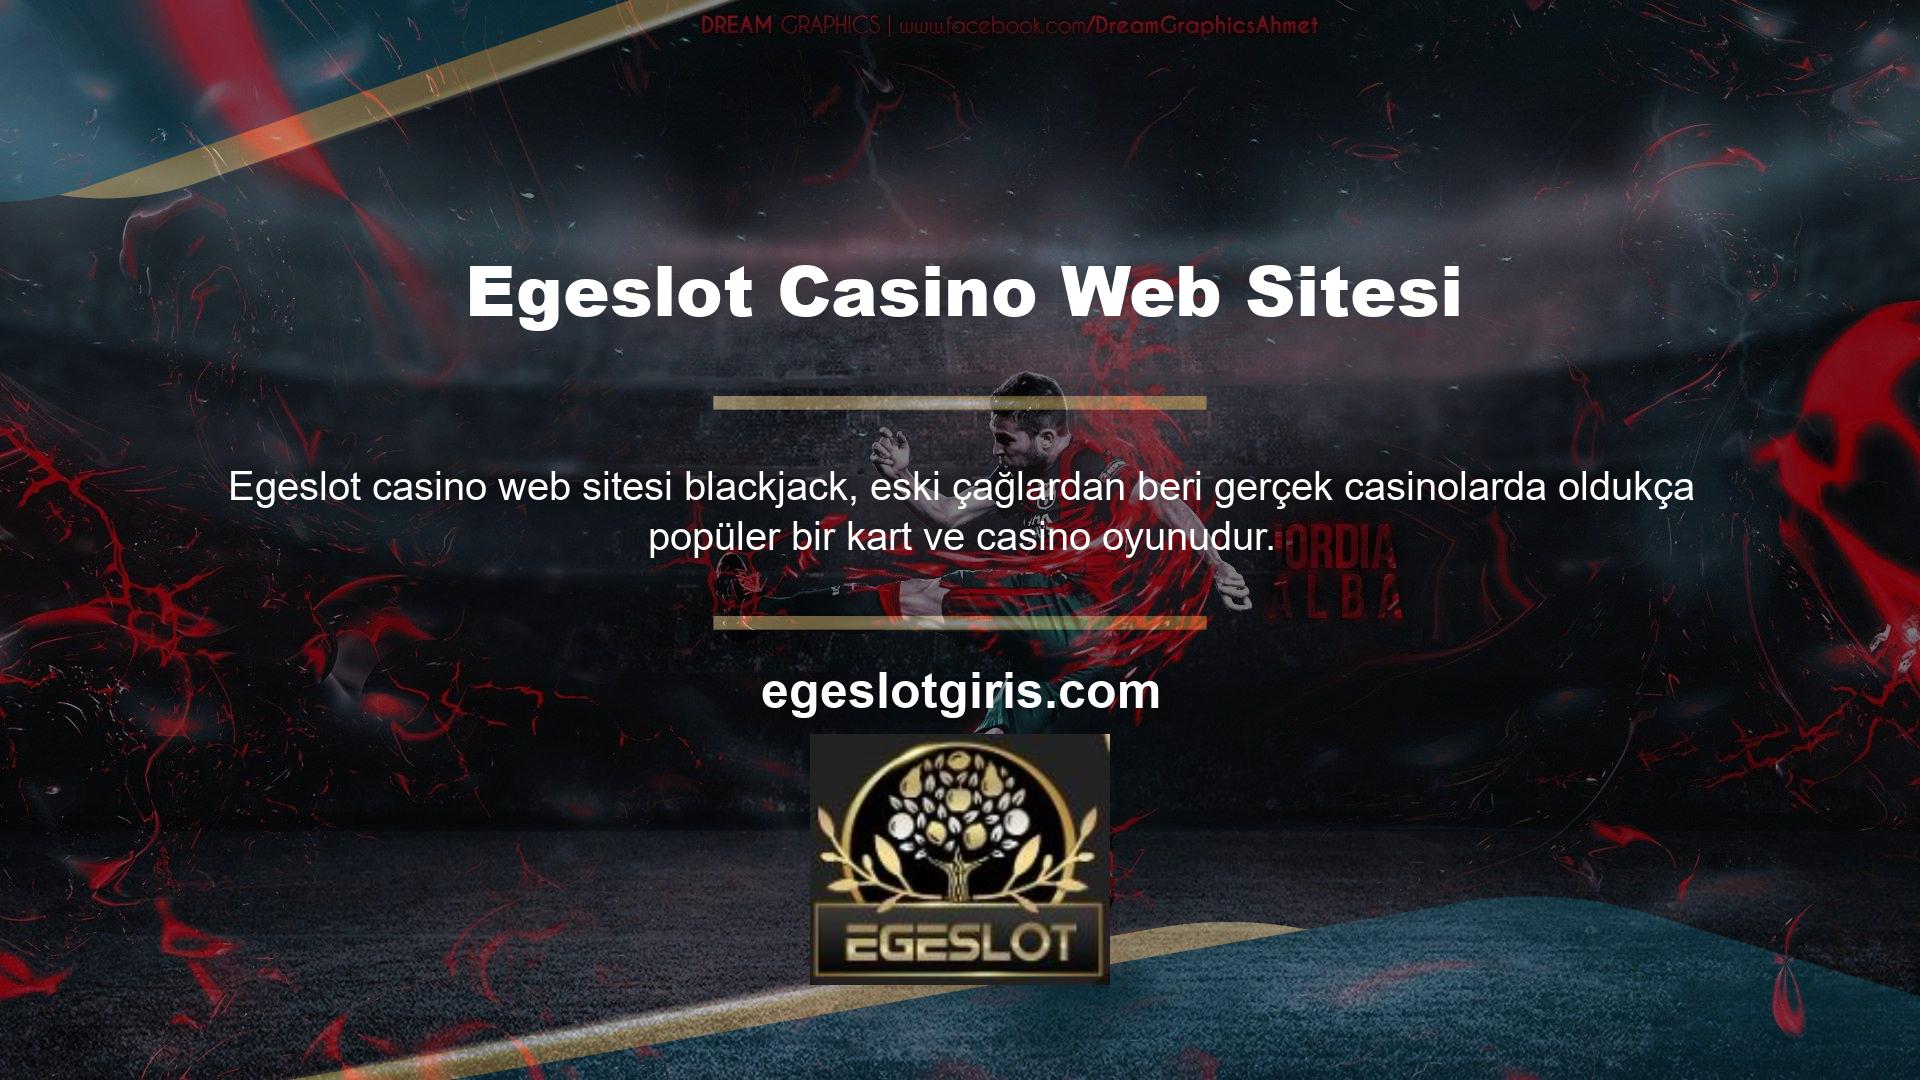 Kıbrıs ve Egeslot casinoların çoğu casino oynamayı seven kişilere ayrılmıştır